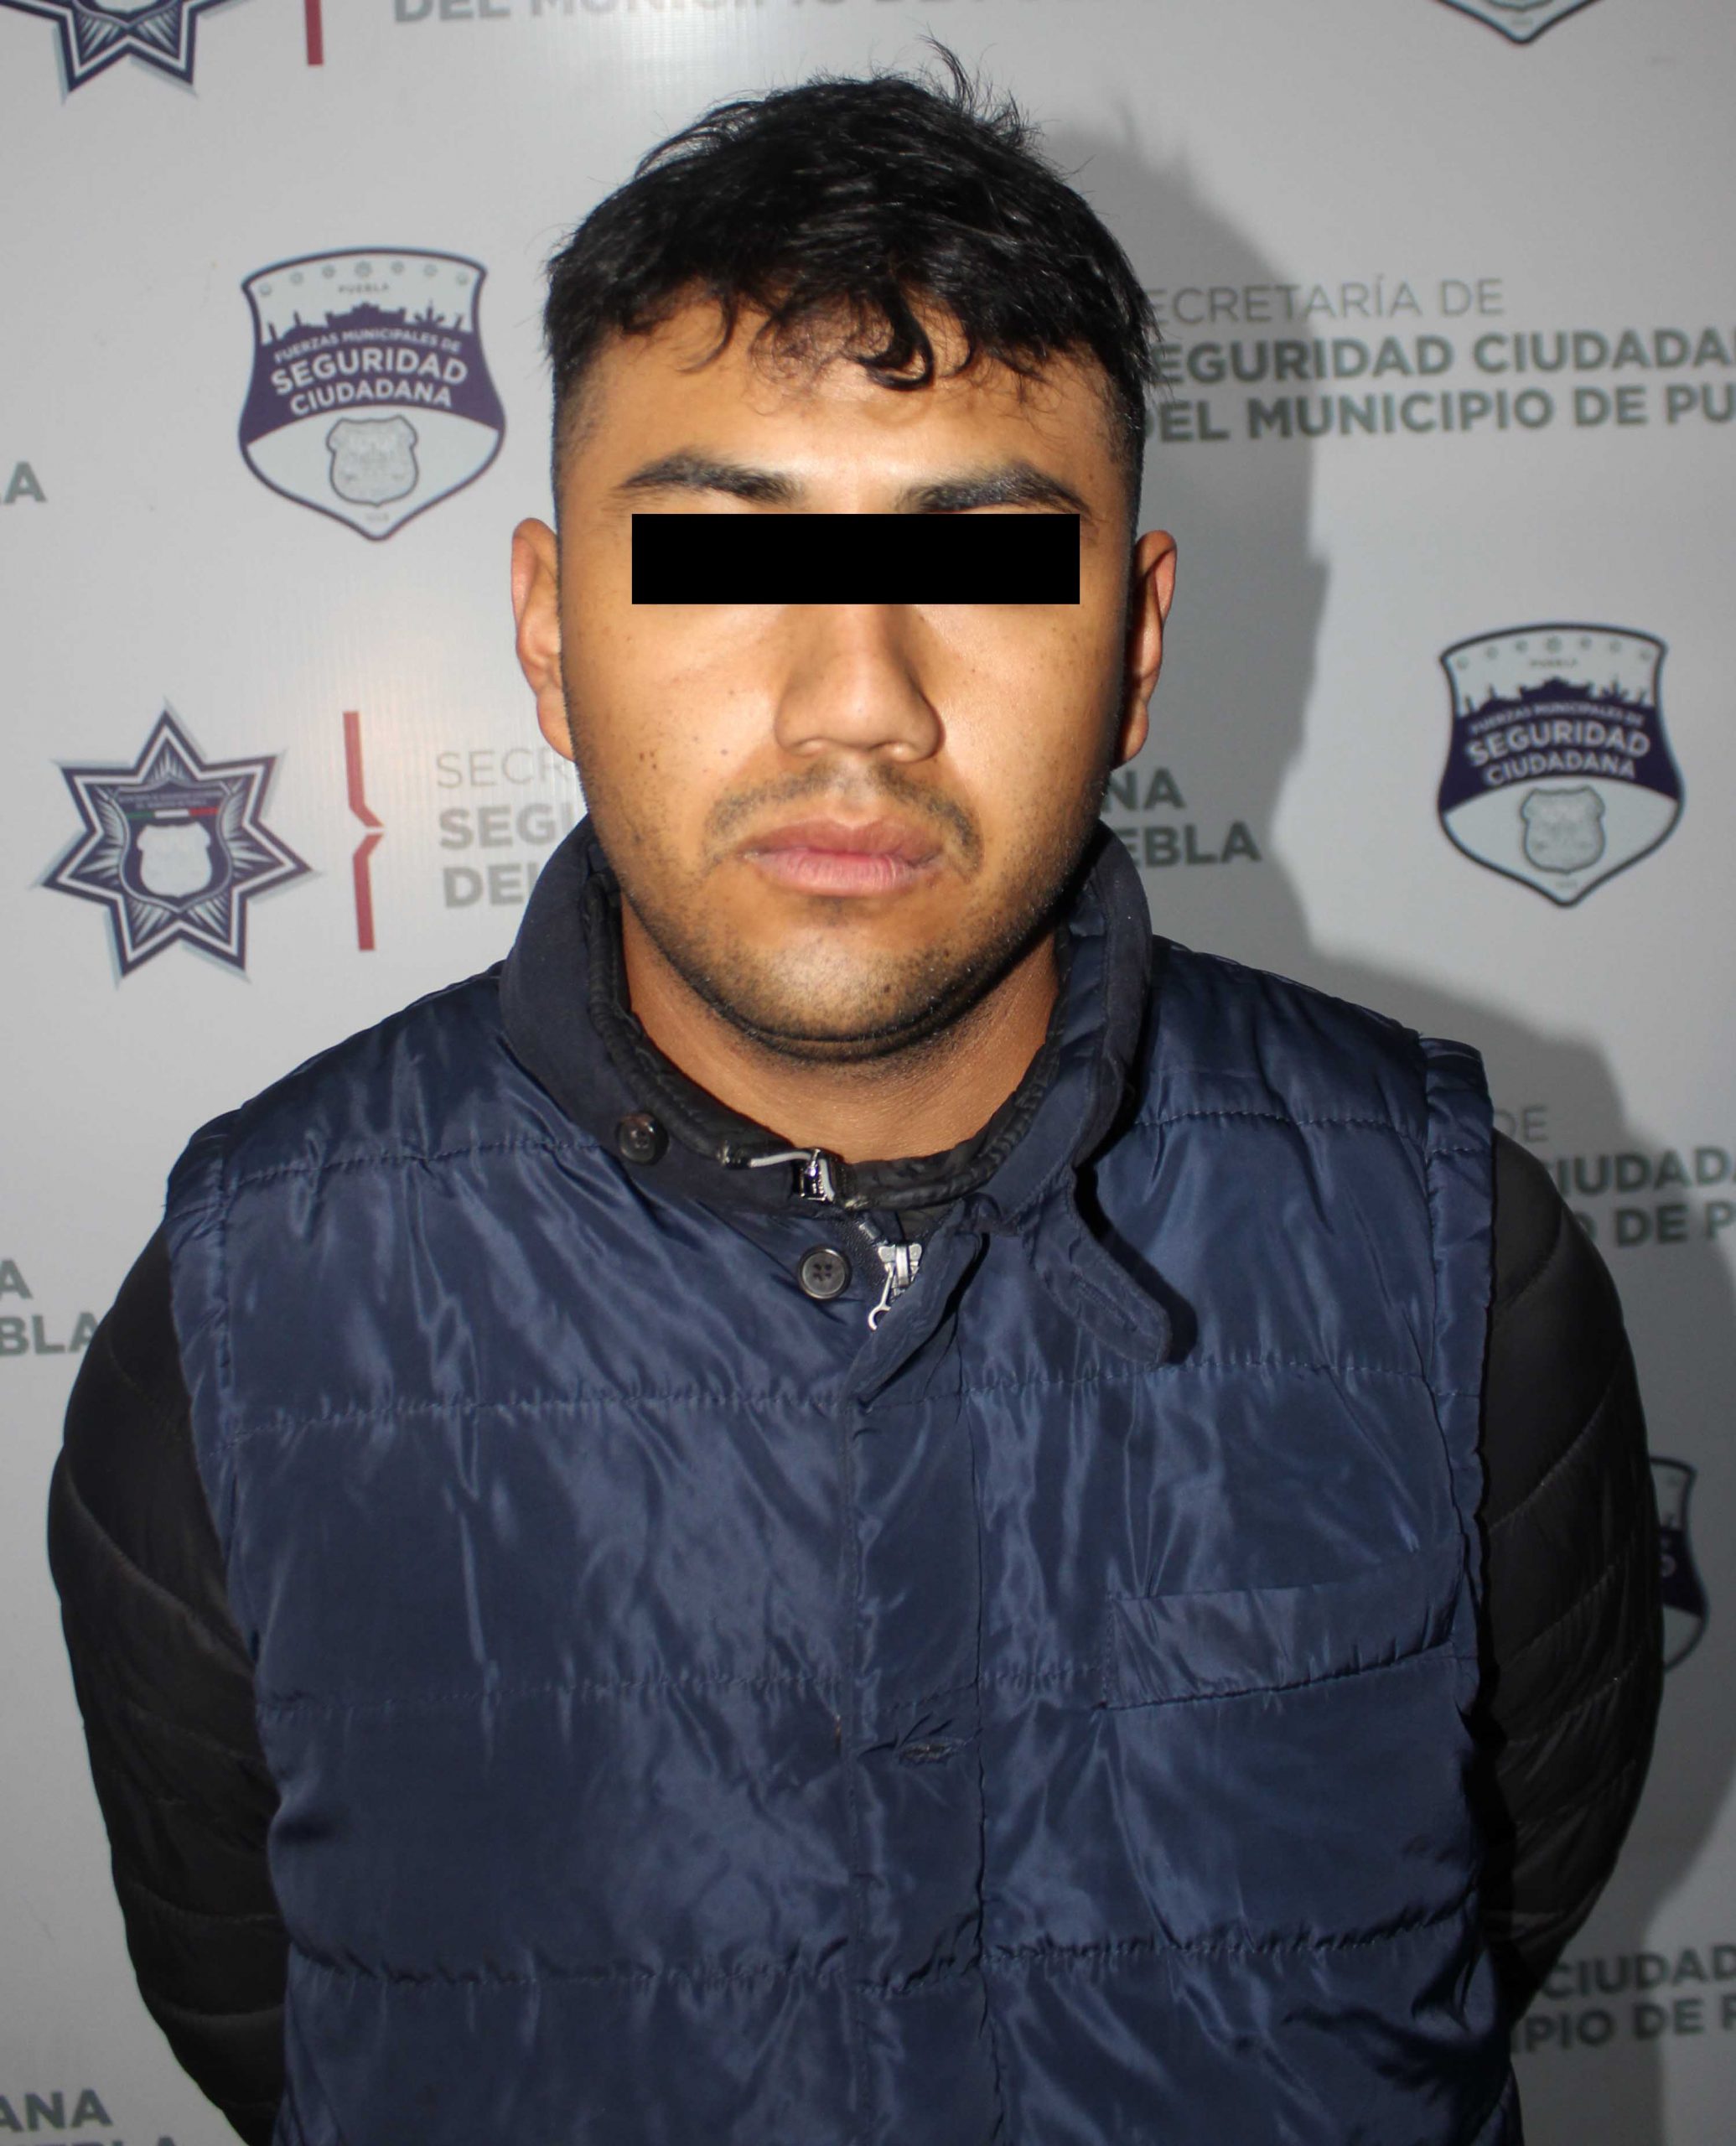  Exitosamente, recuperó Policía Municipal de Puebla un vehículo robado; una persona fue detenida.